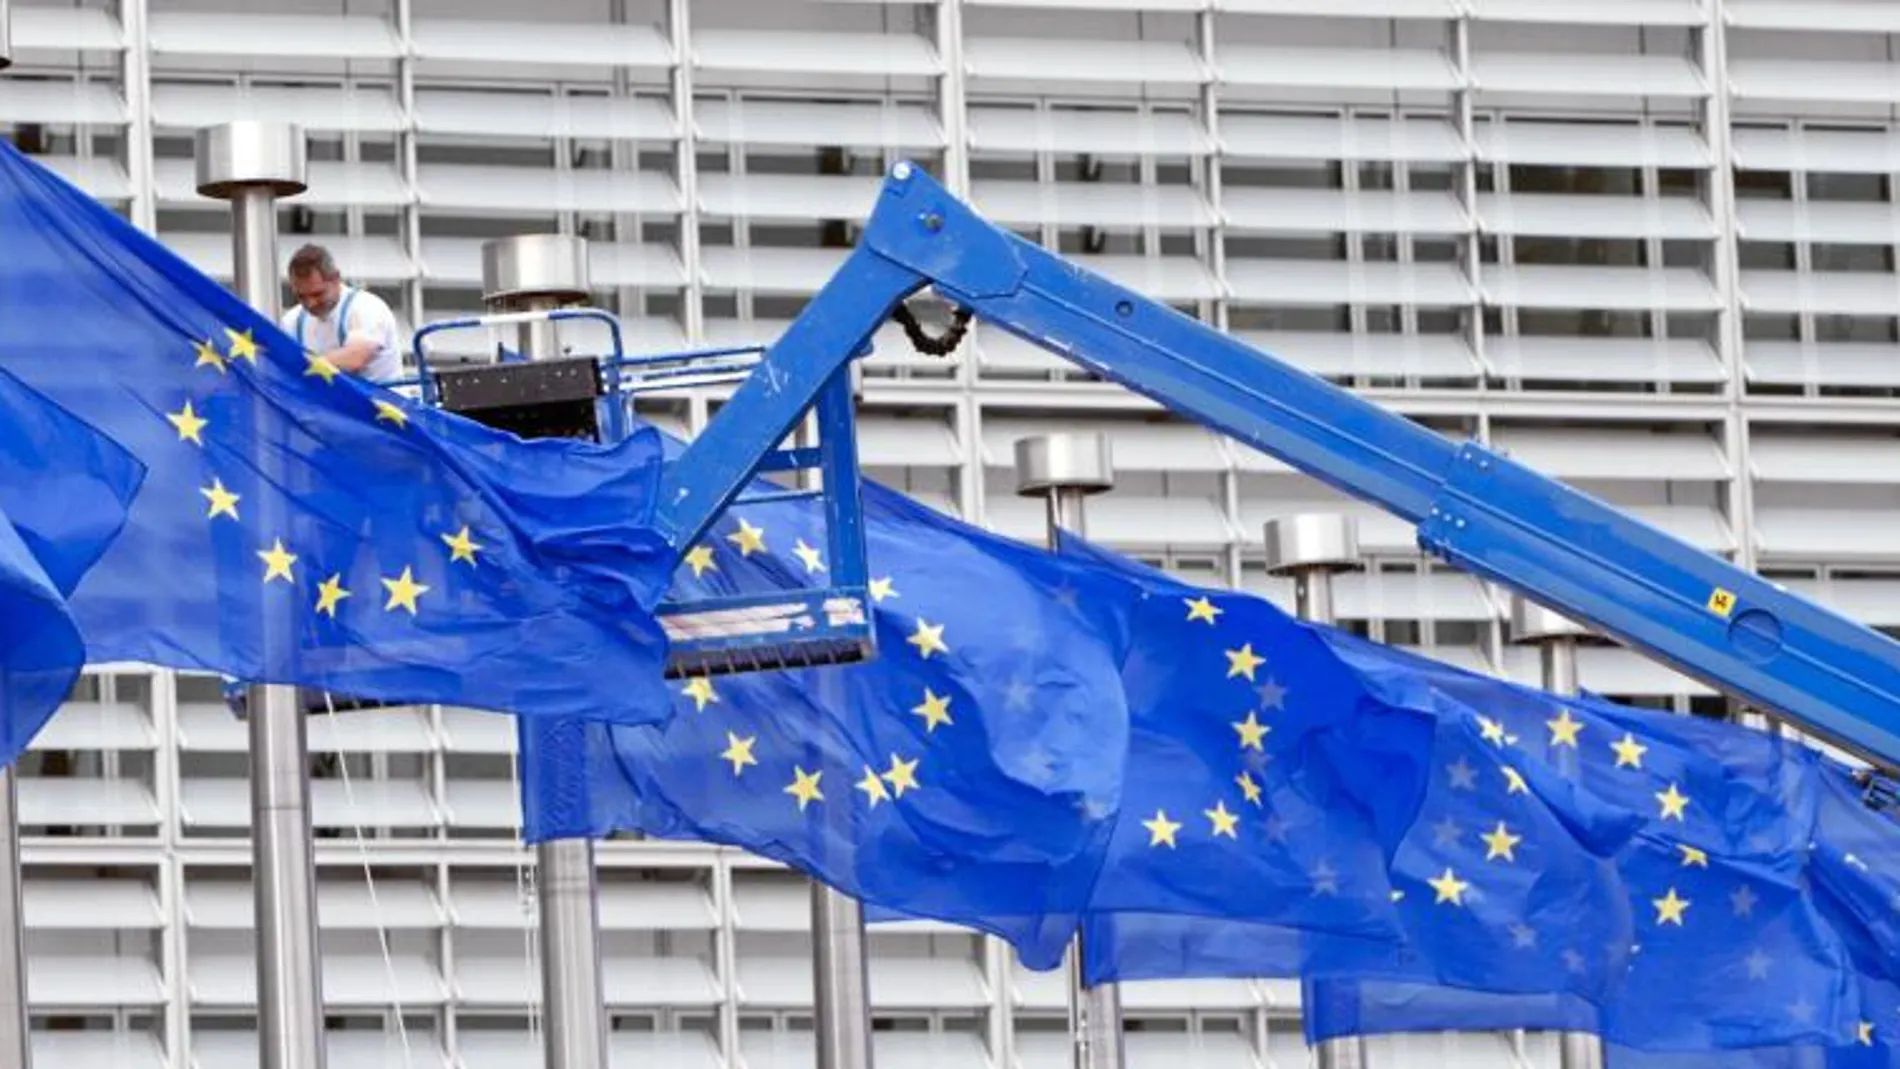 Un trabajador arregla una de las banderas de la sede de la Unión Europea en Bruselas el 23 de julio, día del referéndum británico